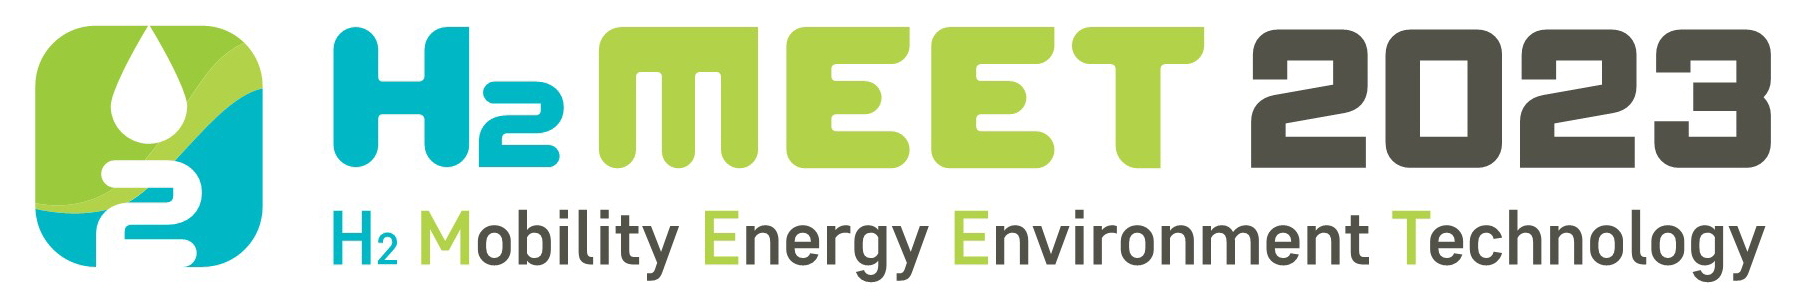 H2MEET_logo_Title logo1.jpg